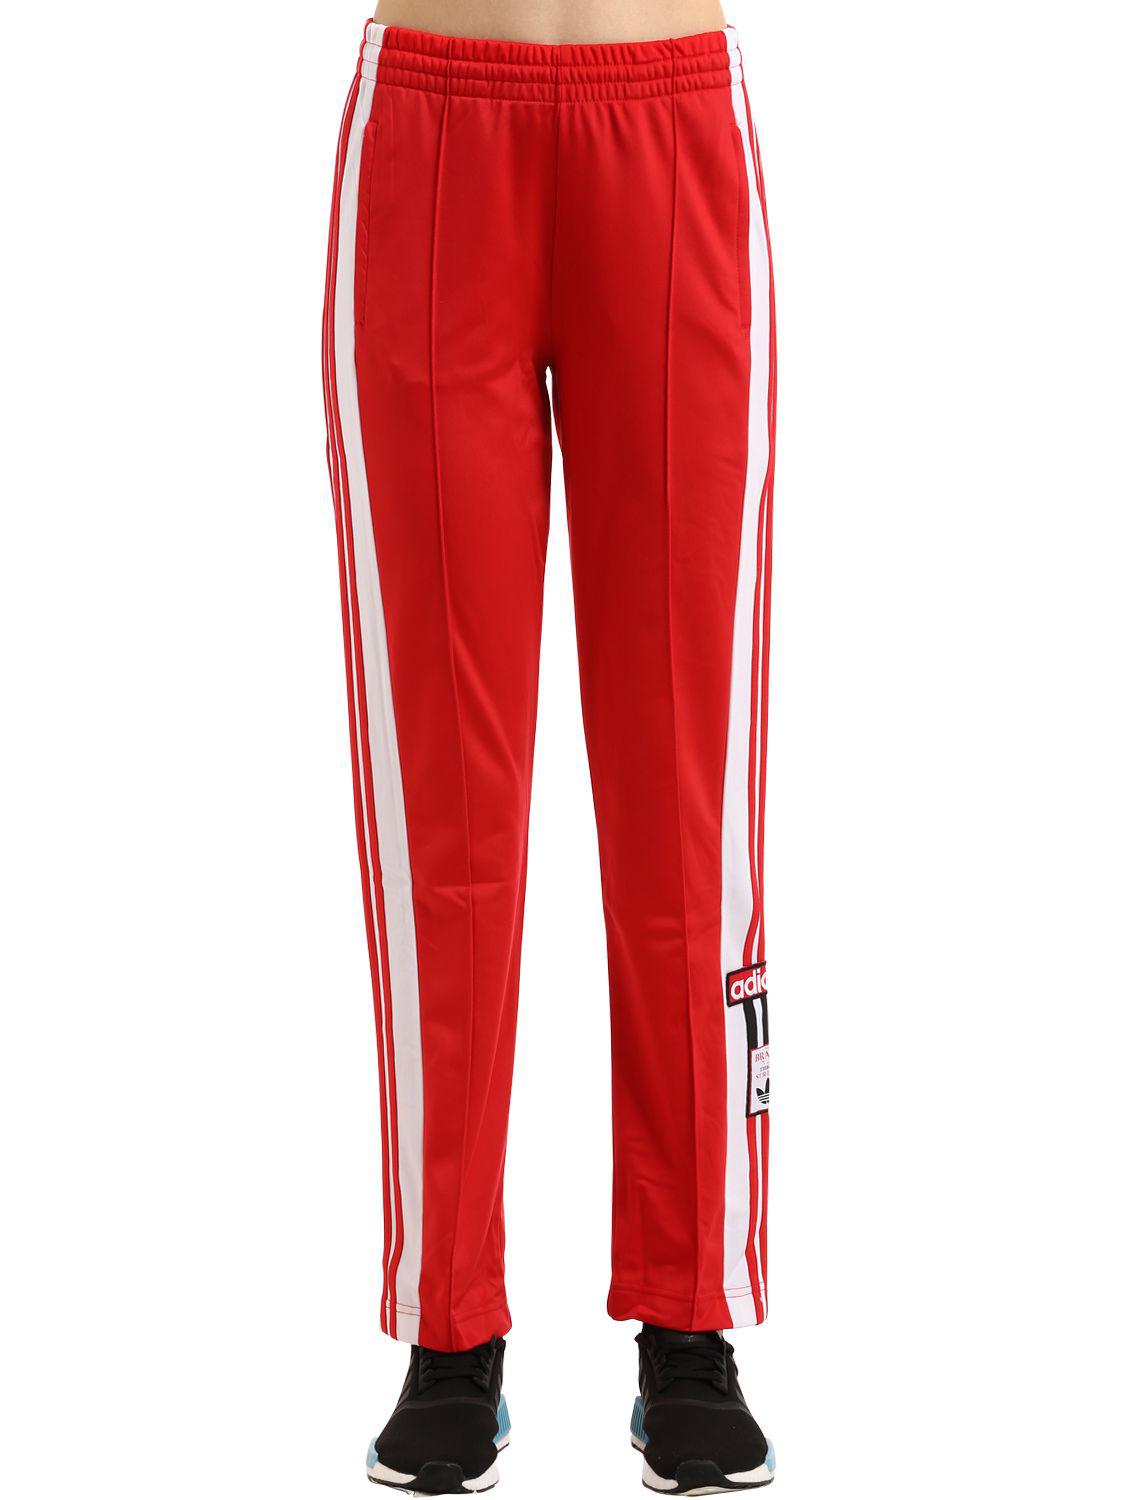 red adibreak track pants